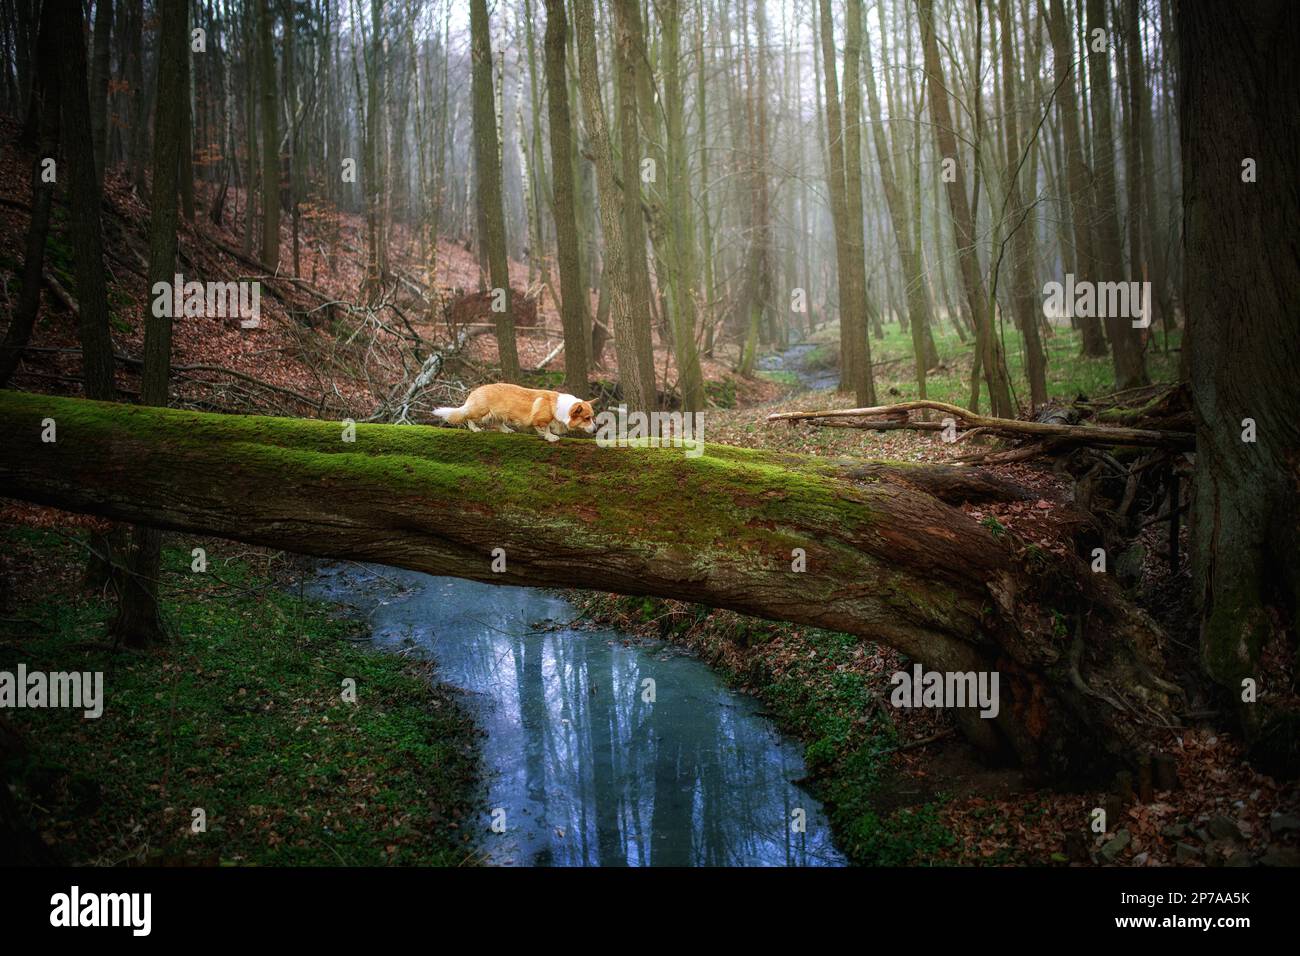 Un chien de Pembroke gallois Corgi marche sur un arbre tombé au-dessus d'une rivière. Dans la forêt Banque D'Images